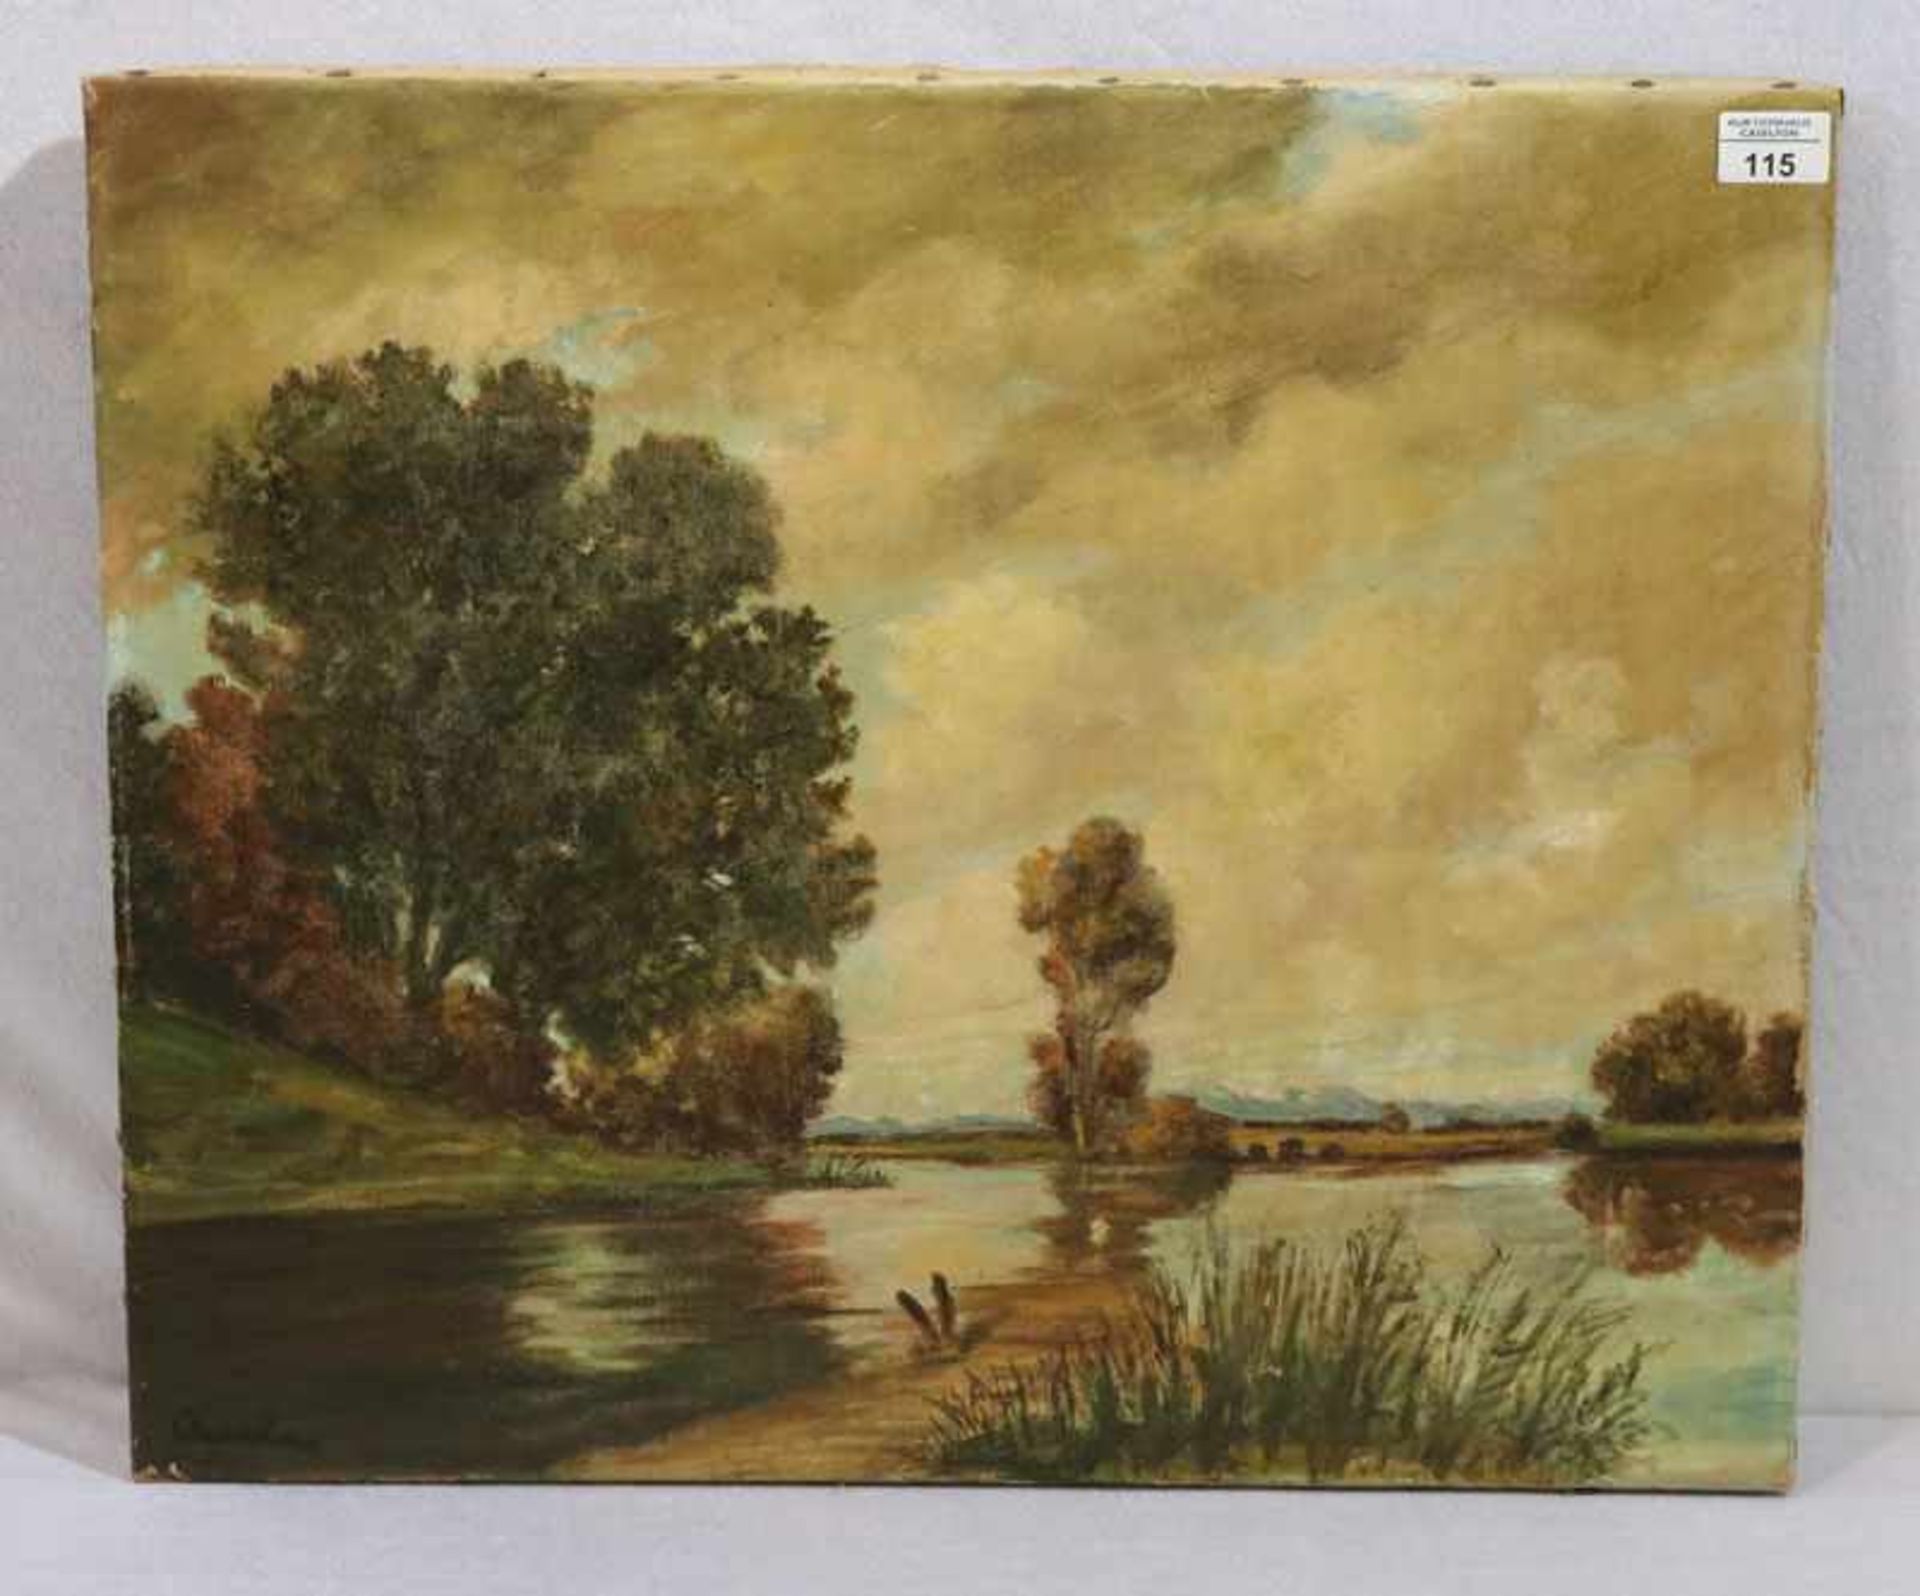 Gemälde ÖL/LW 'Gewässer in Voralpenlandschaft', undeutlich signiert, ohne Rahmen, 50 cm x 61 cm